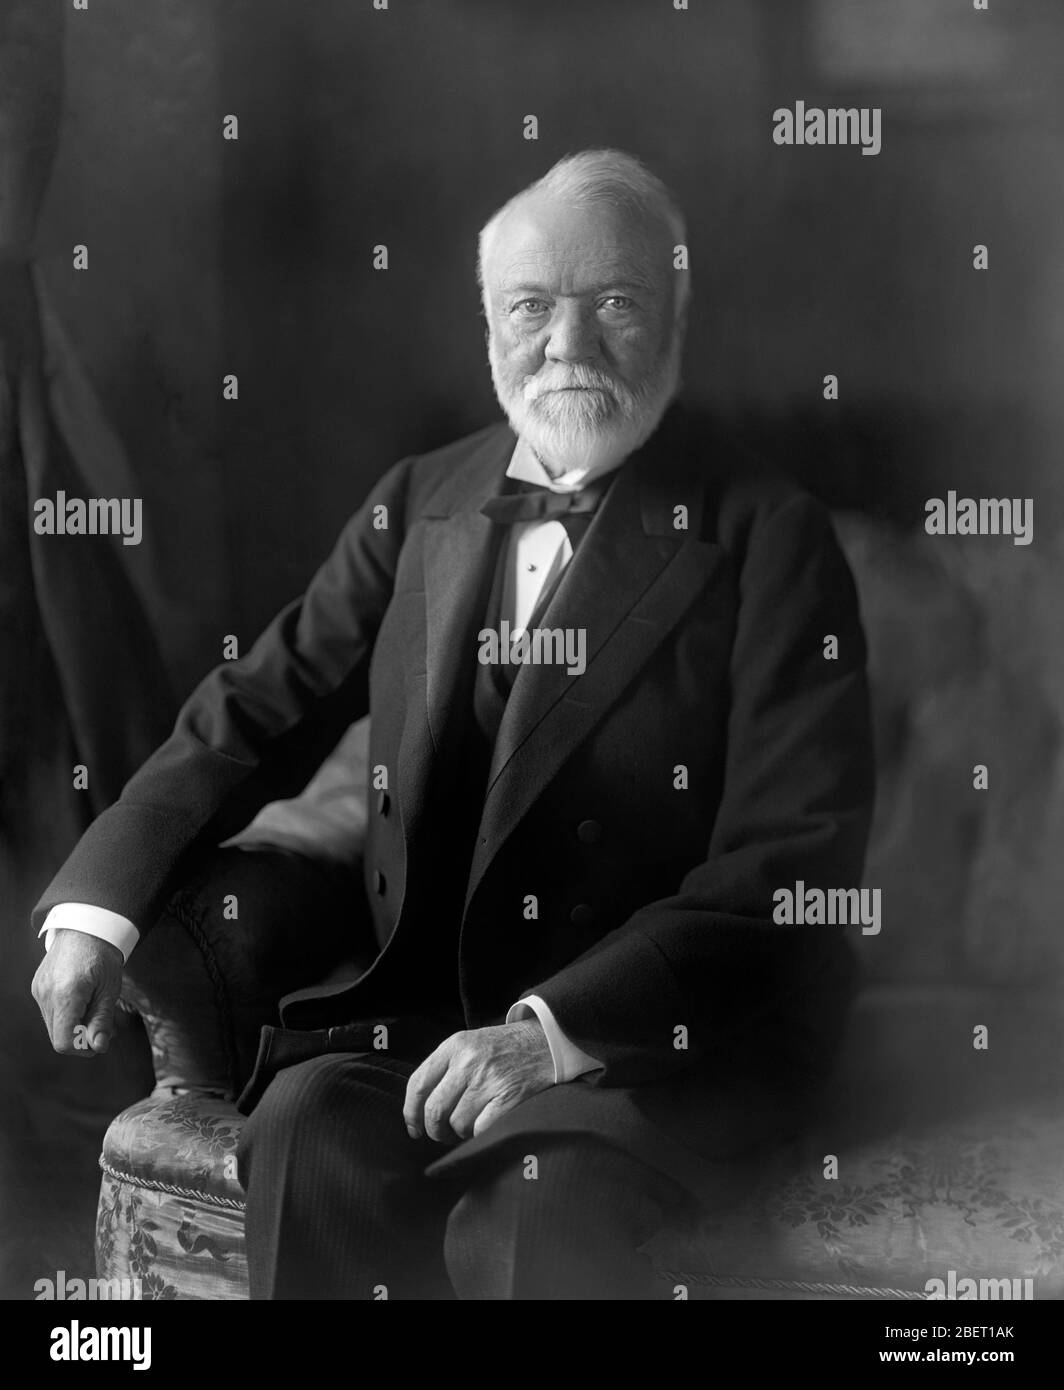 Der schottische amerikanische Geschäftsmann und Philanthrope Andrew Carnegie nahm 1905 die Aufnahmen auf. Stockfoto